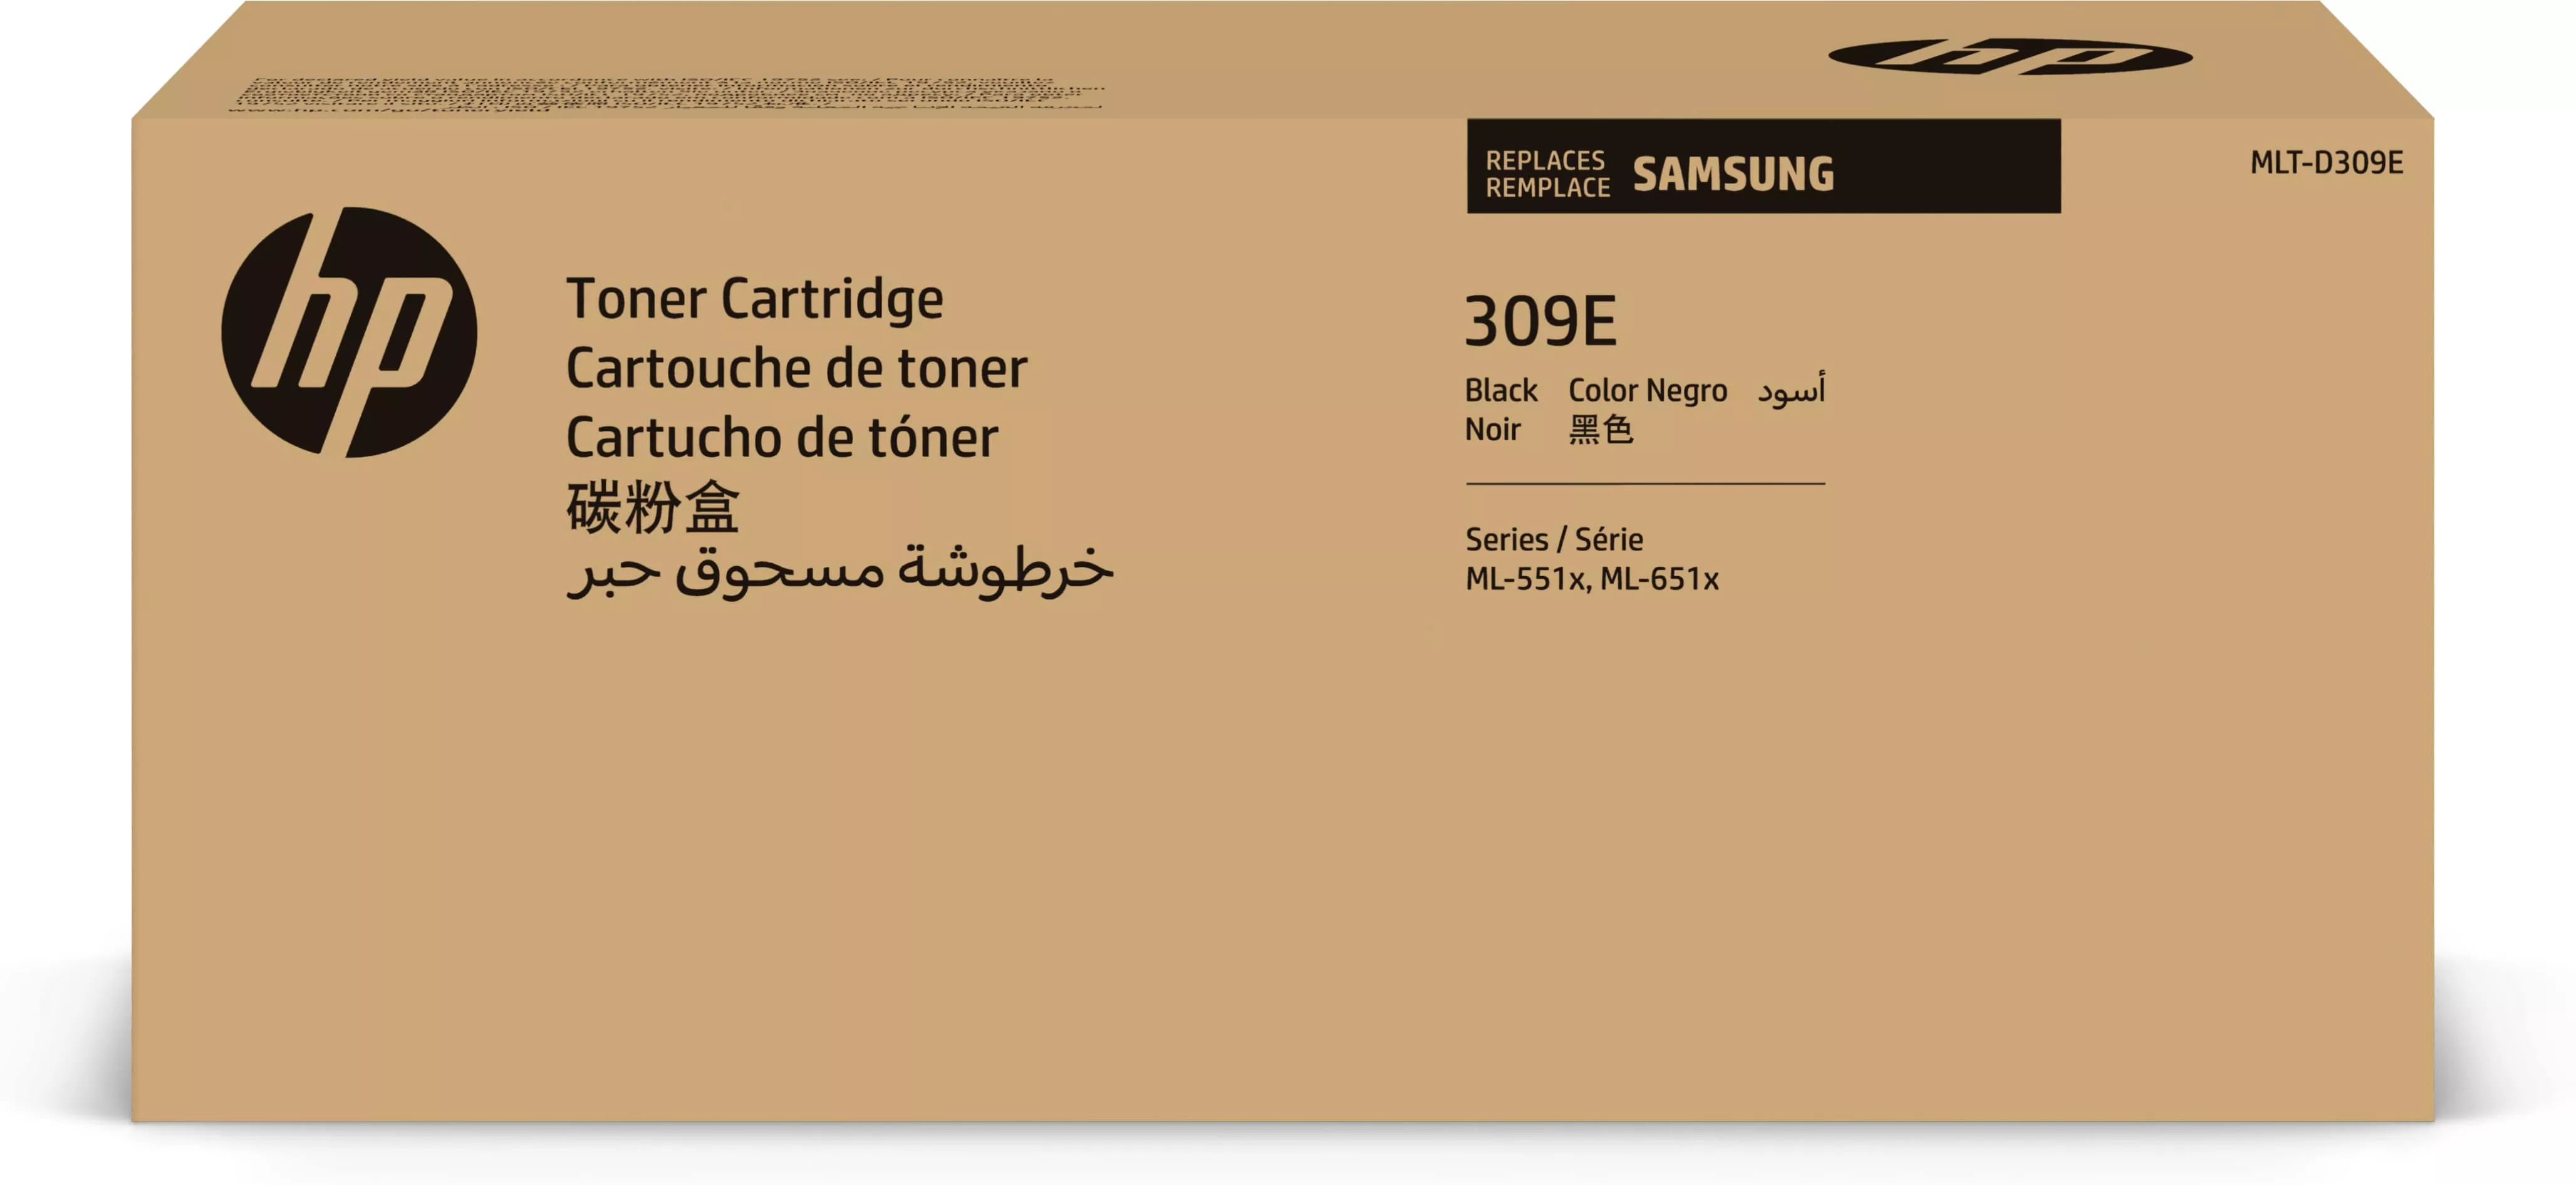 Achat HP Cartouche de toner noir très grande capacité Samsung sur hello RSE